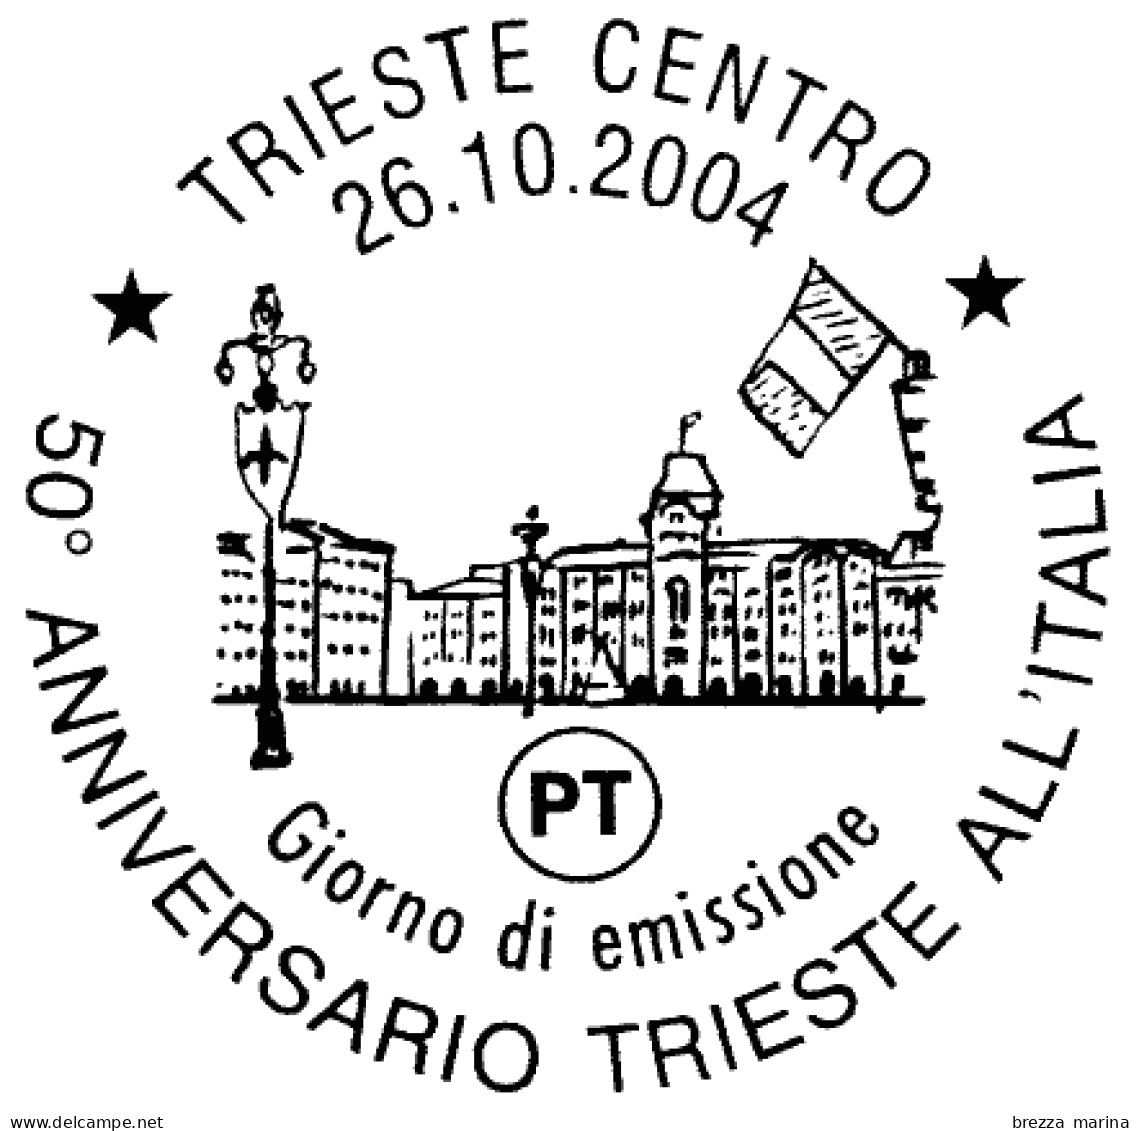 ITALIA - Usato - 2004 - 50 Anni Della Restituzione Della Città Di Trieste All'Italia - Piazza Dell'unità - 0,45 - 2001-10: Gebraucht